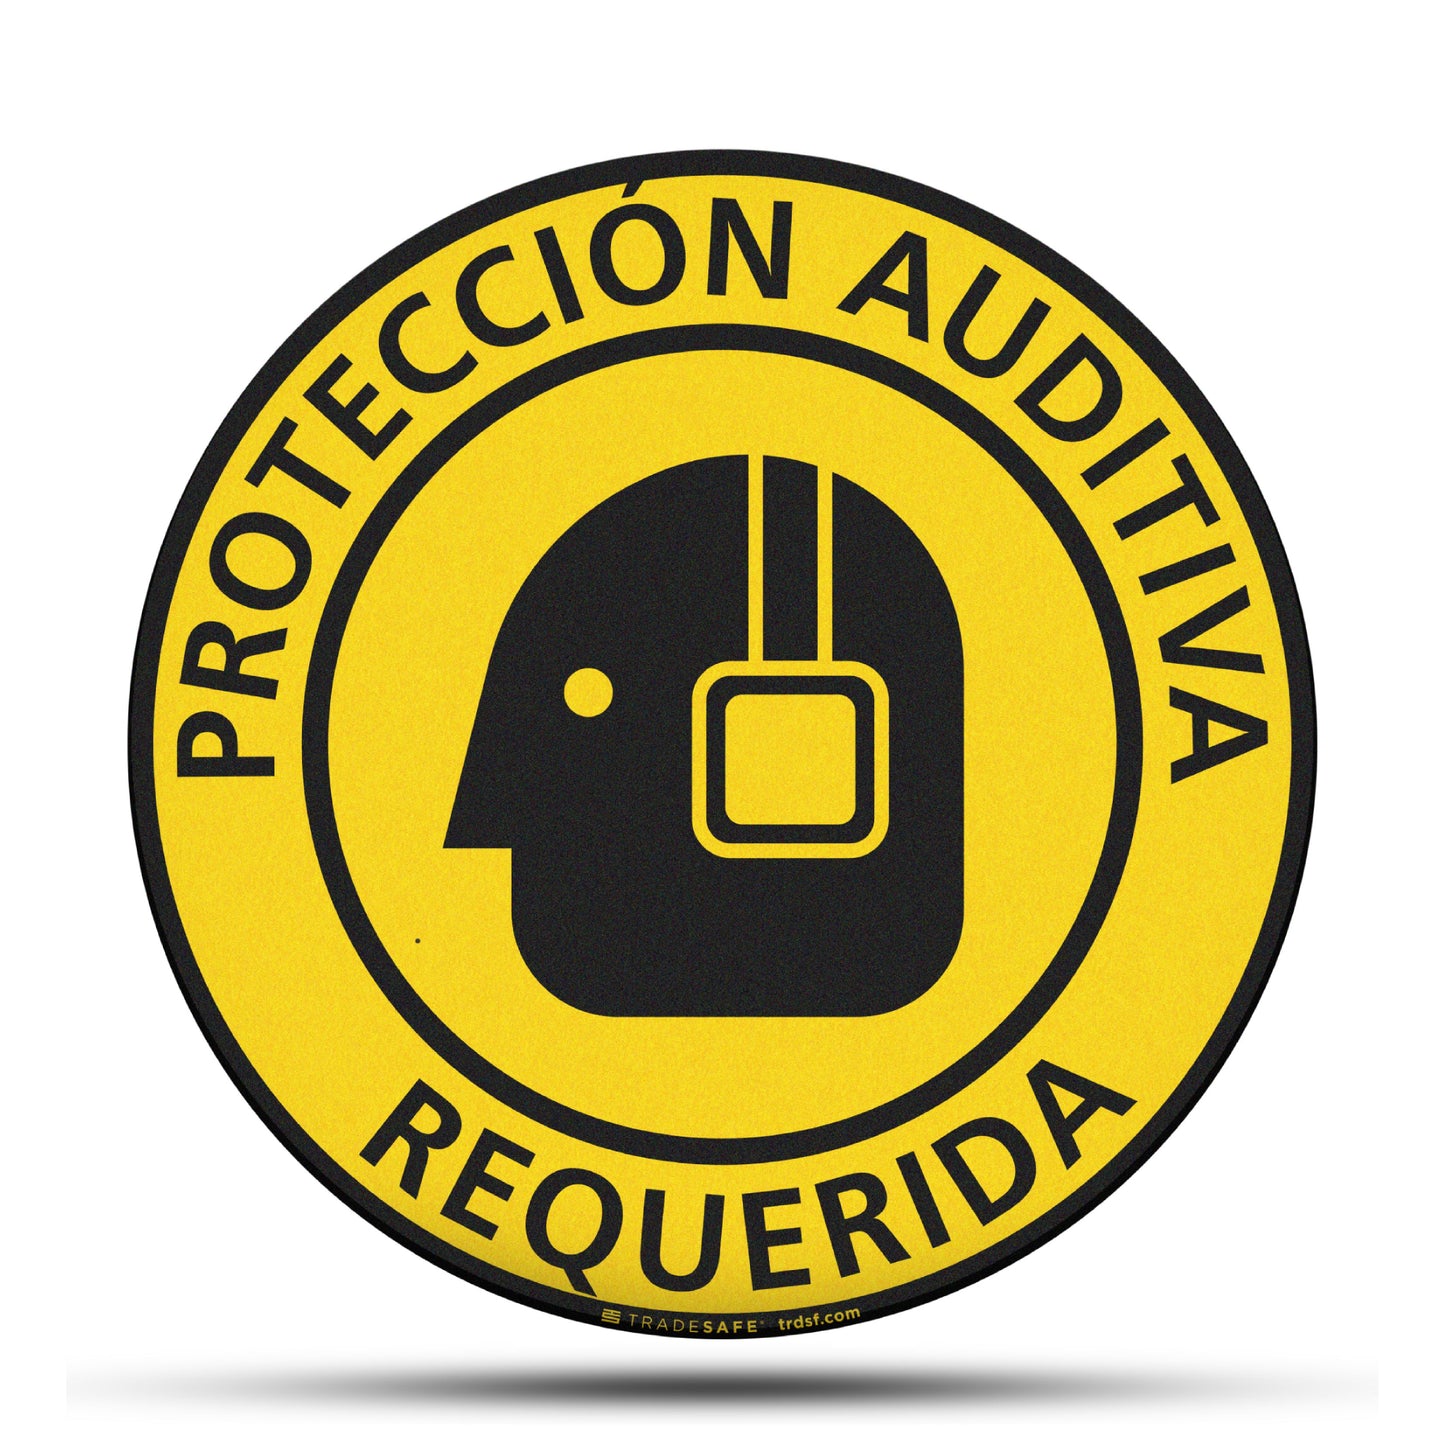 "protección auditiva requerida" sign vinyl sticker